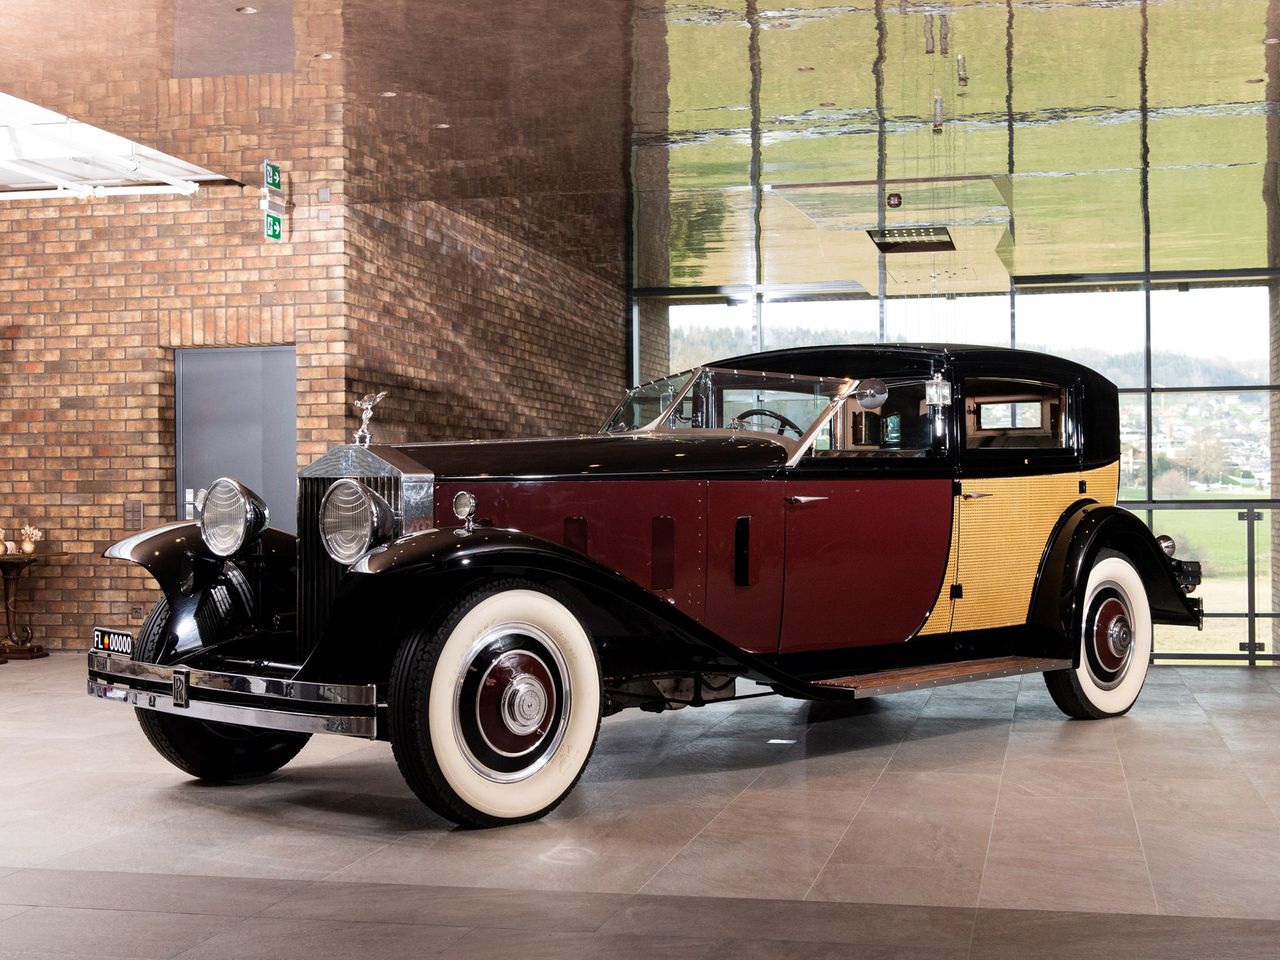 Rolls-Royce Phantom II z 1933 r. - jeden z najdroższych pojazdów w kolekcji